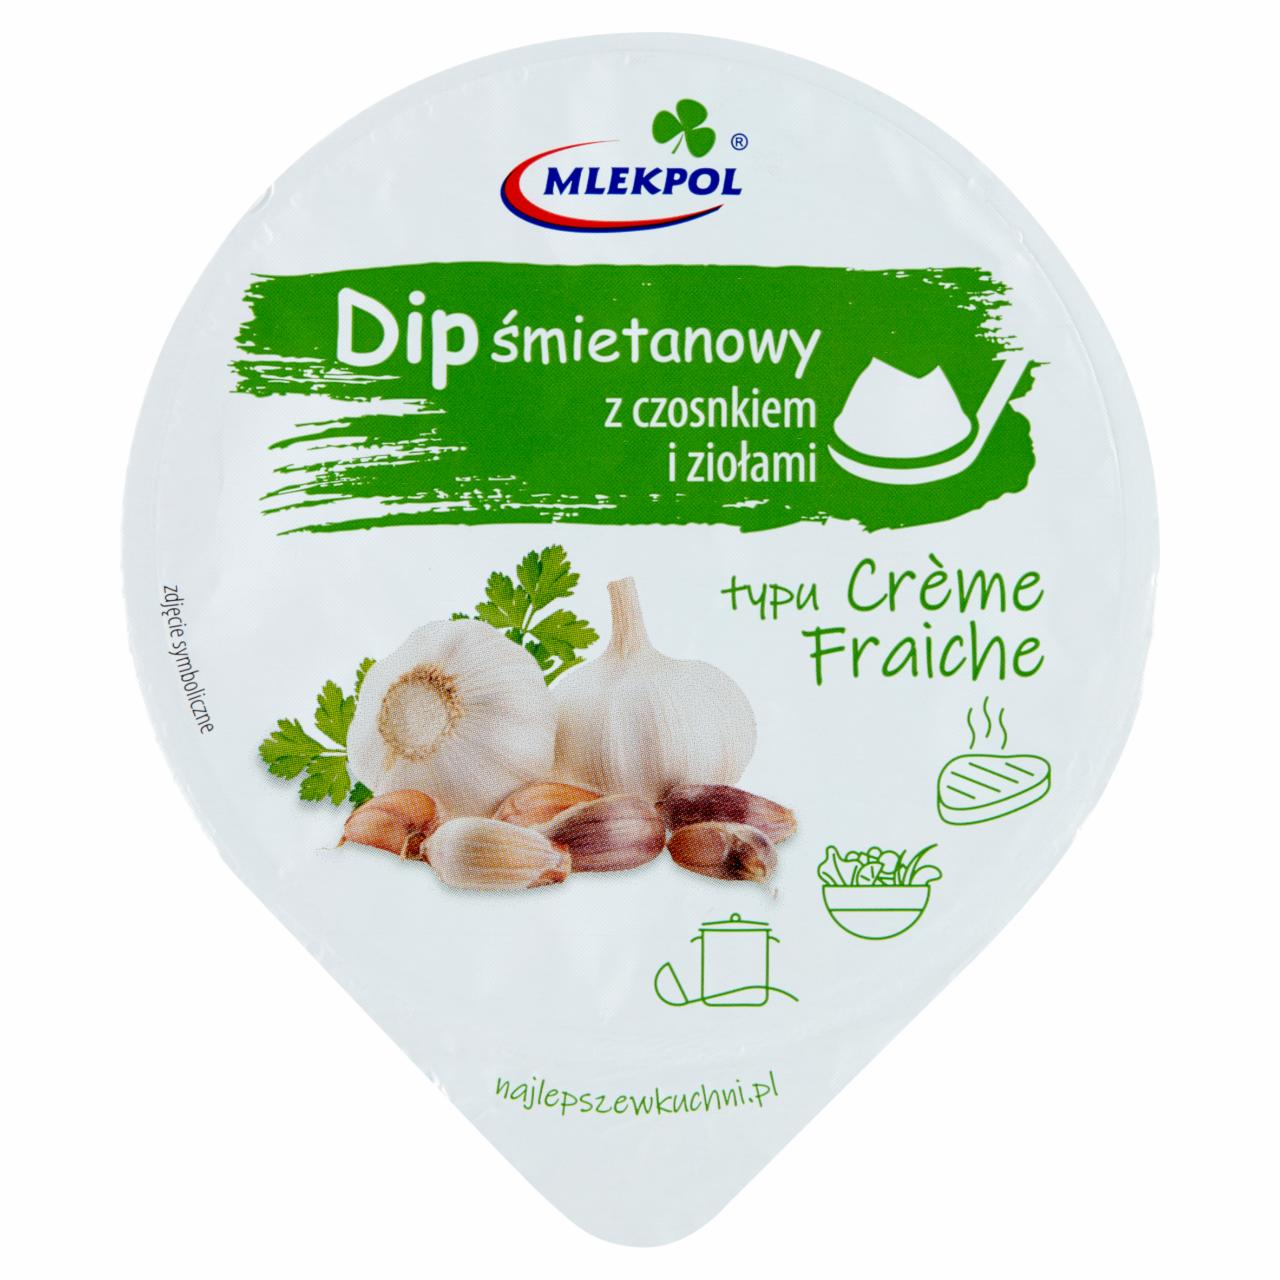 Zdjęcia - Mlekpol Dip śmietanowy z czosnkiem i ziołami typu Crème Fraiche 180 g